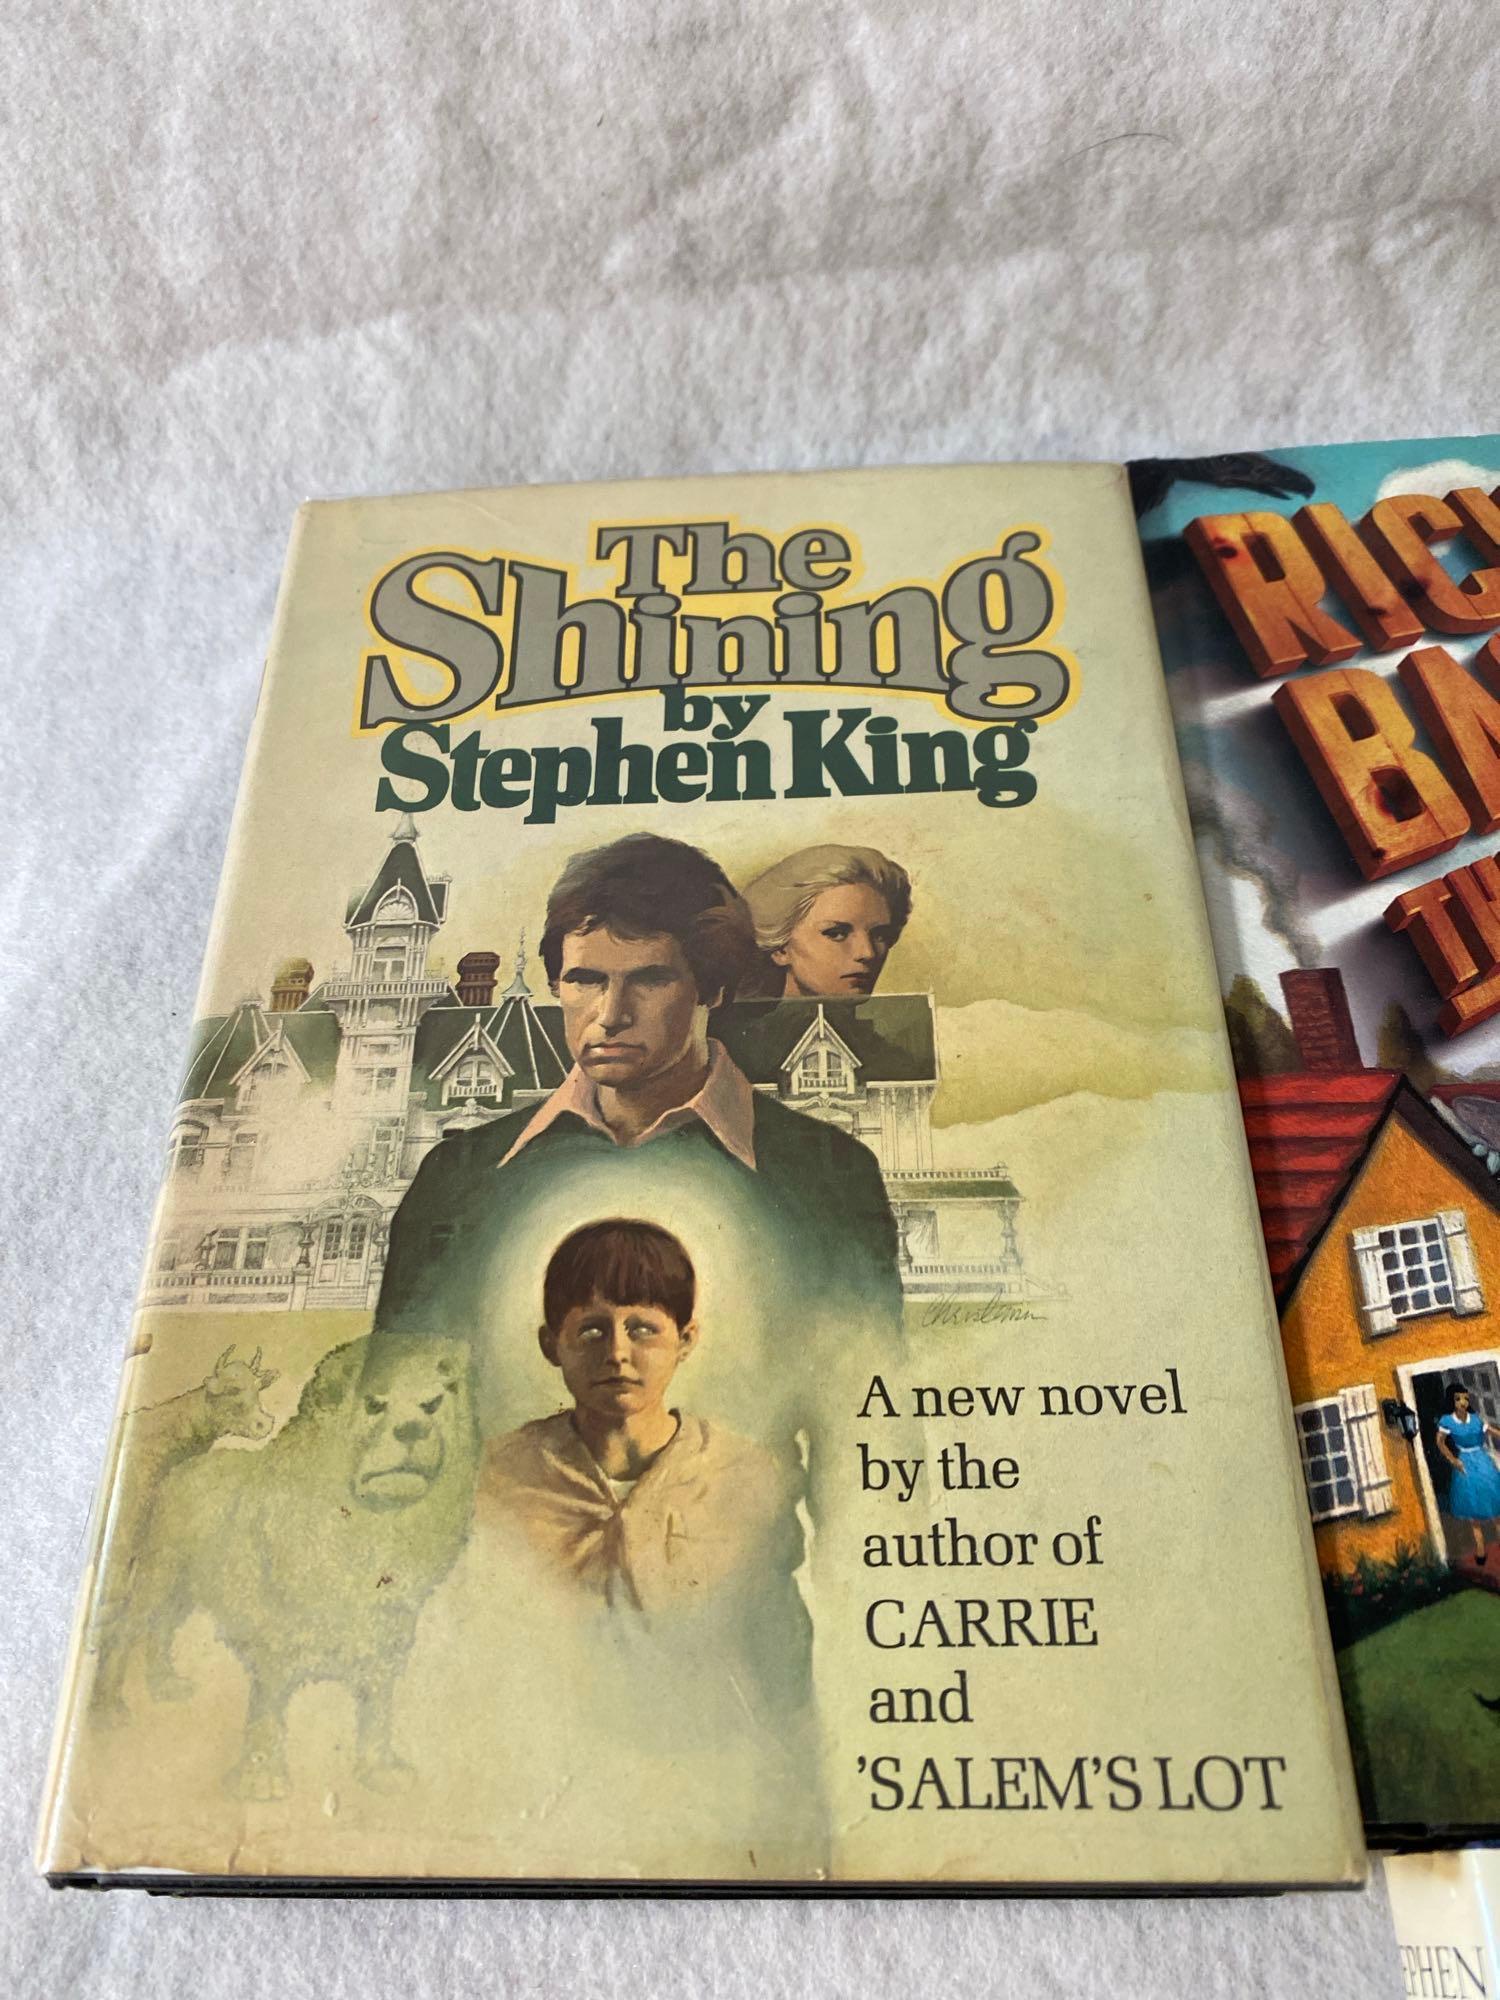 Seven Assorted Stephen King Hard Cover Novels